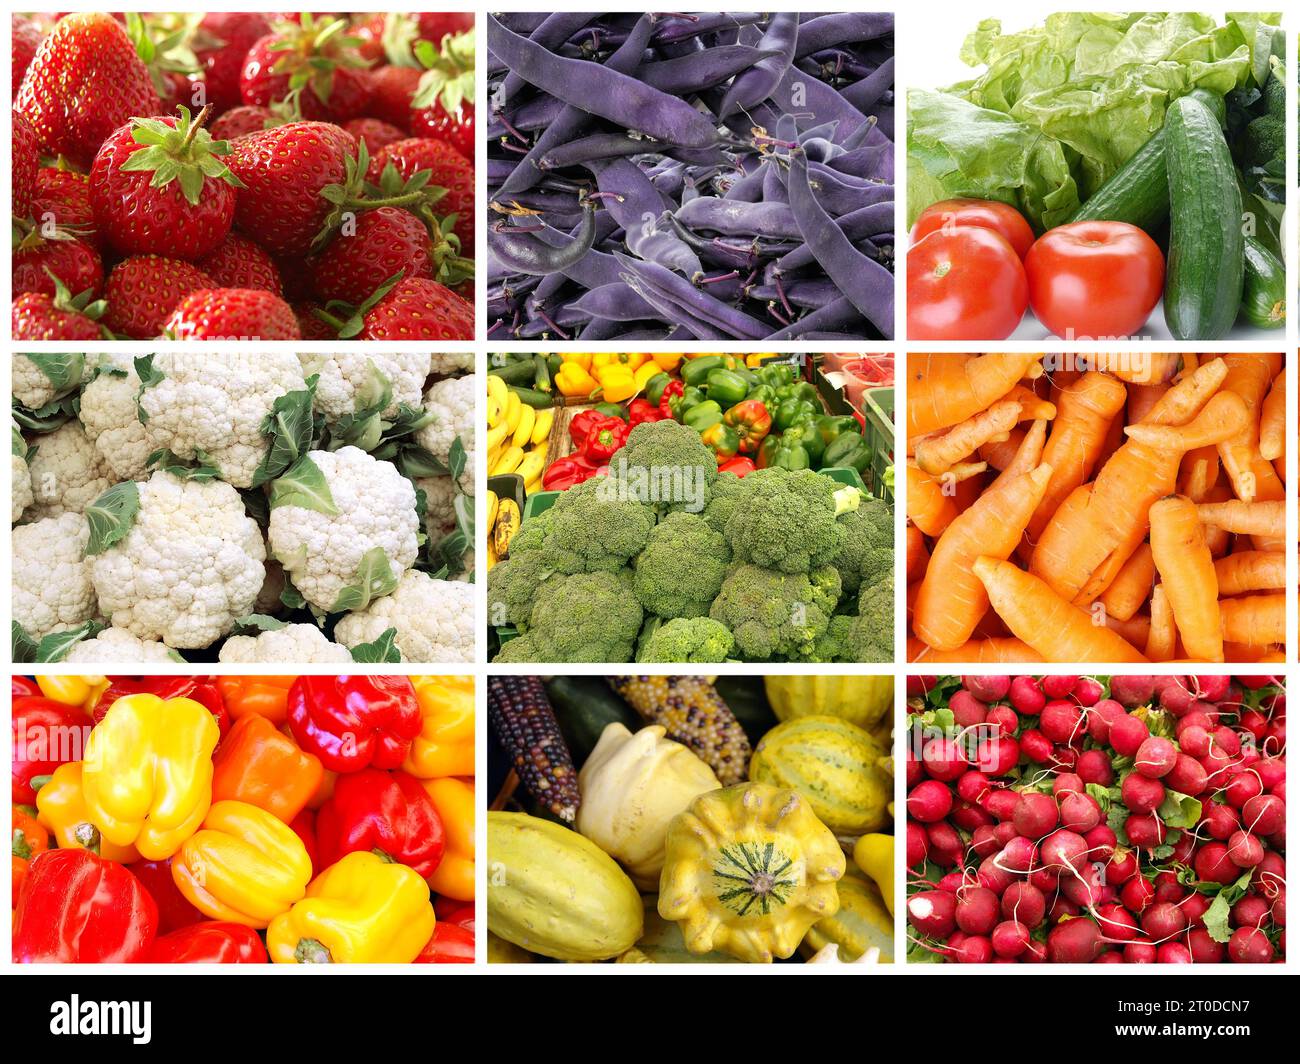 Collage de diverses images de produits locaux mettant en vedette des fruits et légumes frais biologiques comme des fraises, du paprika, du raifort colifleur, du haricot violet Banque D'Images